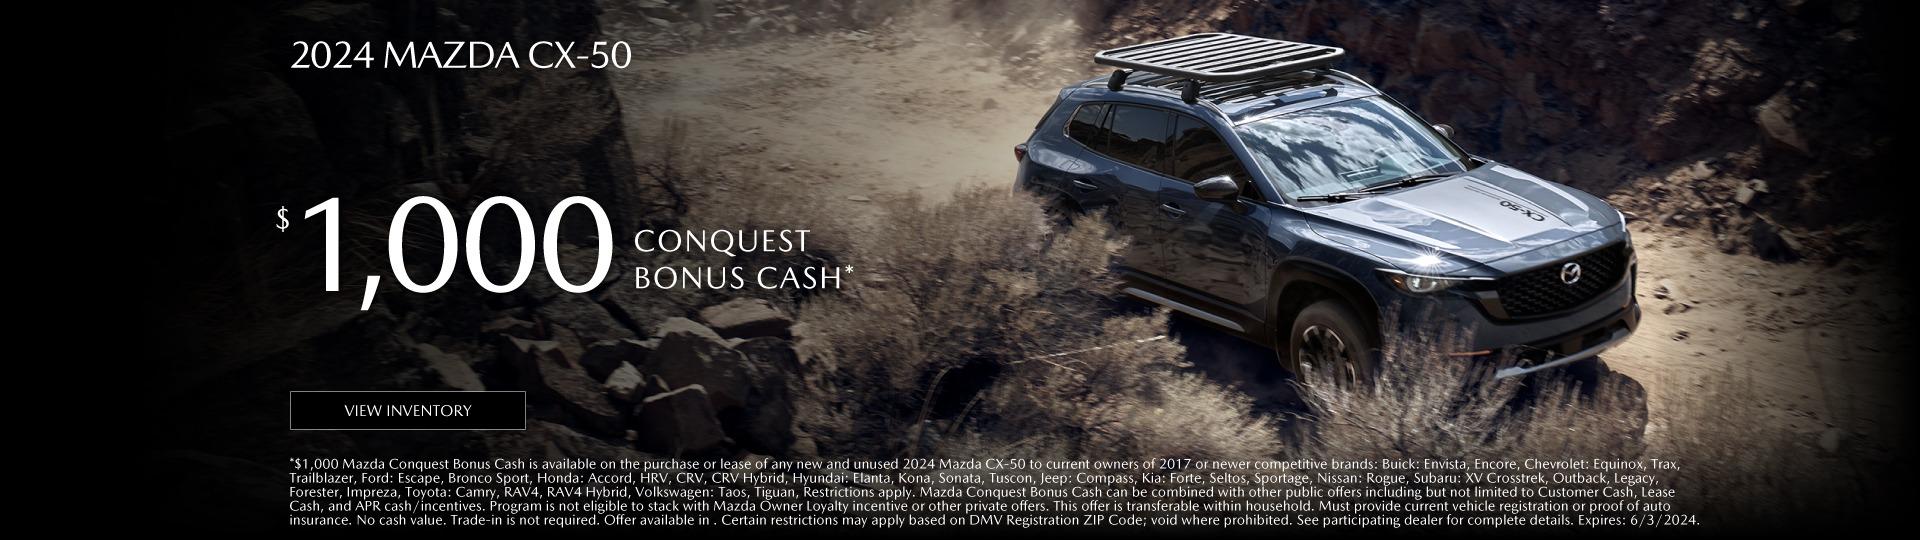 2024 Mazda  CX-50 $1,000 conquest cash